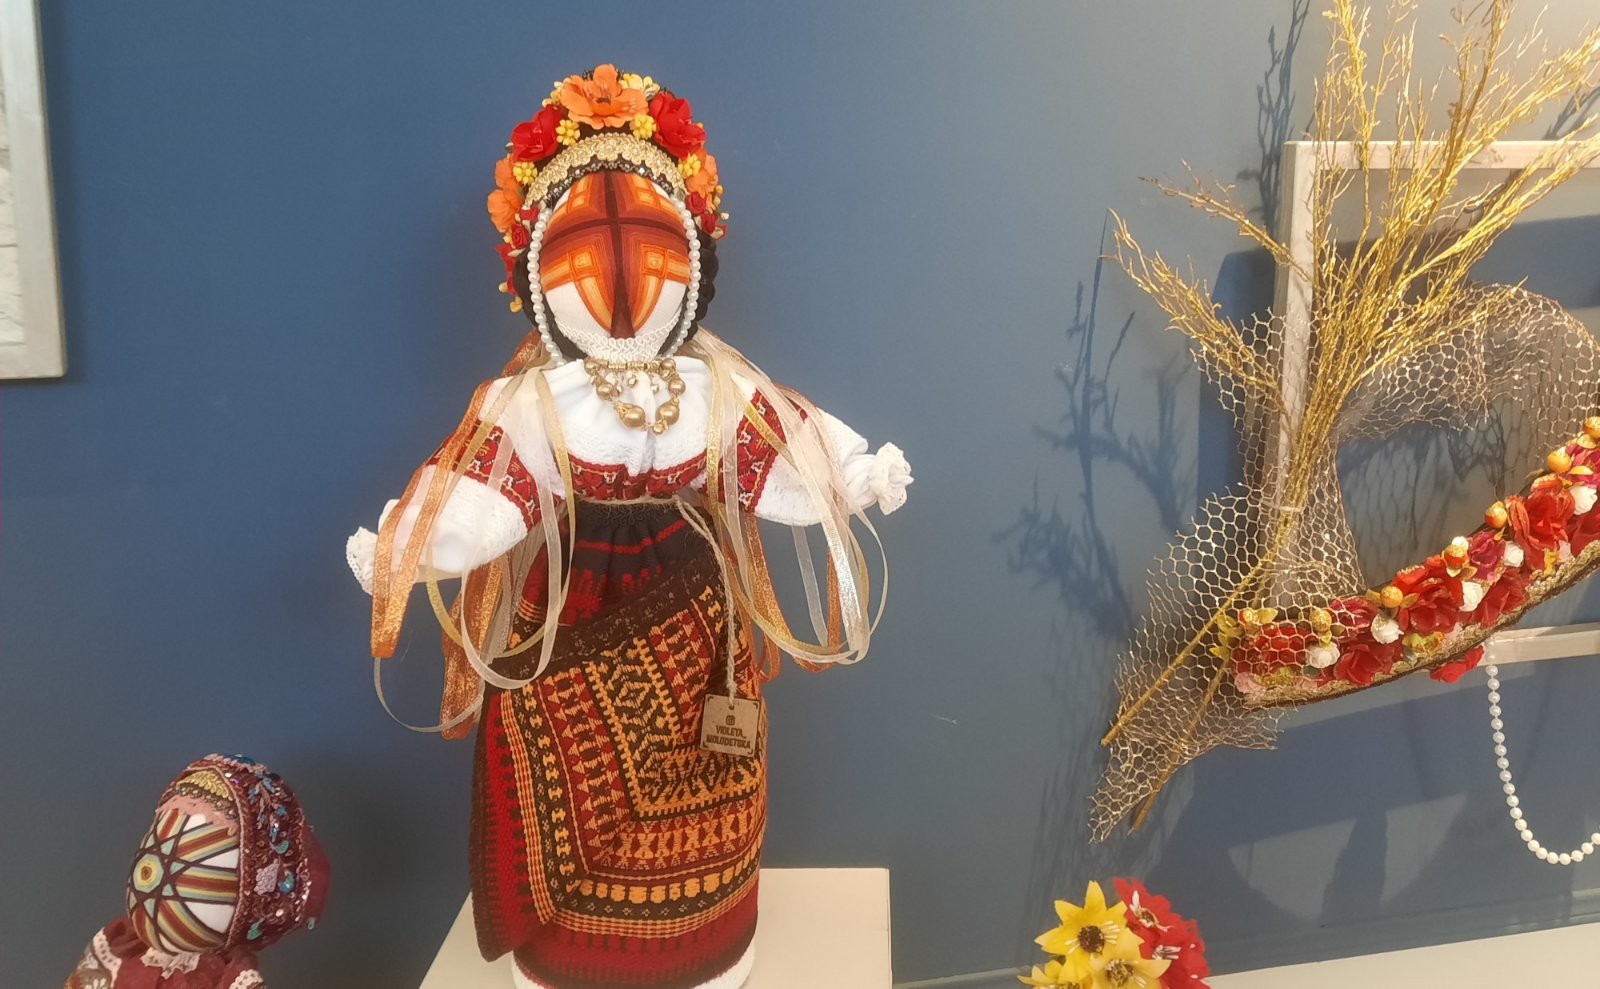 Хранителька українських традицій з Аккерману, яка створює унікальні ляльки-мотанки: фоторепортаж з відкриття першої персональної арт-виставки Віолети Молодецької